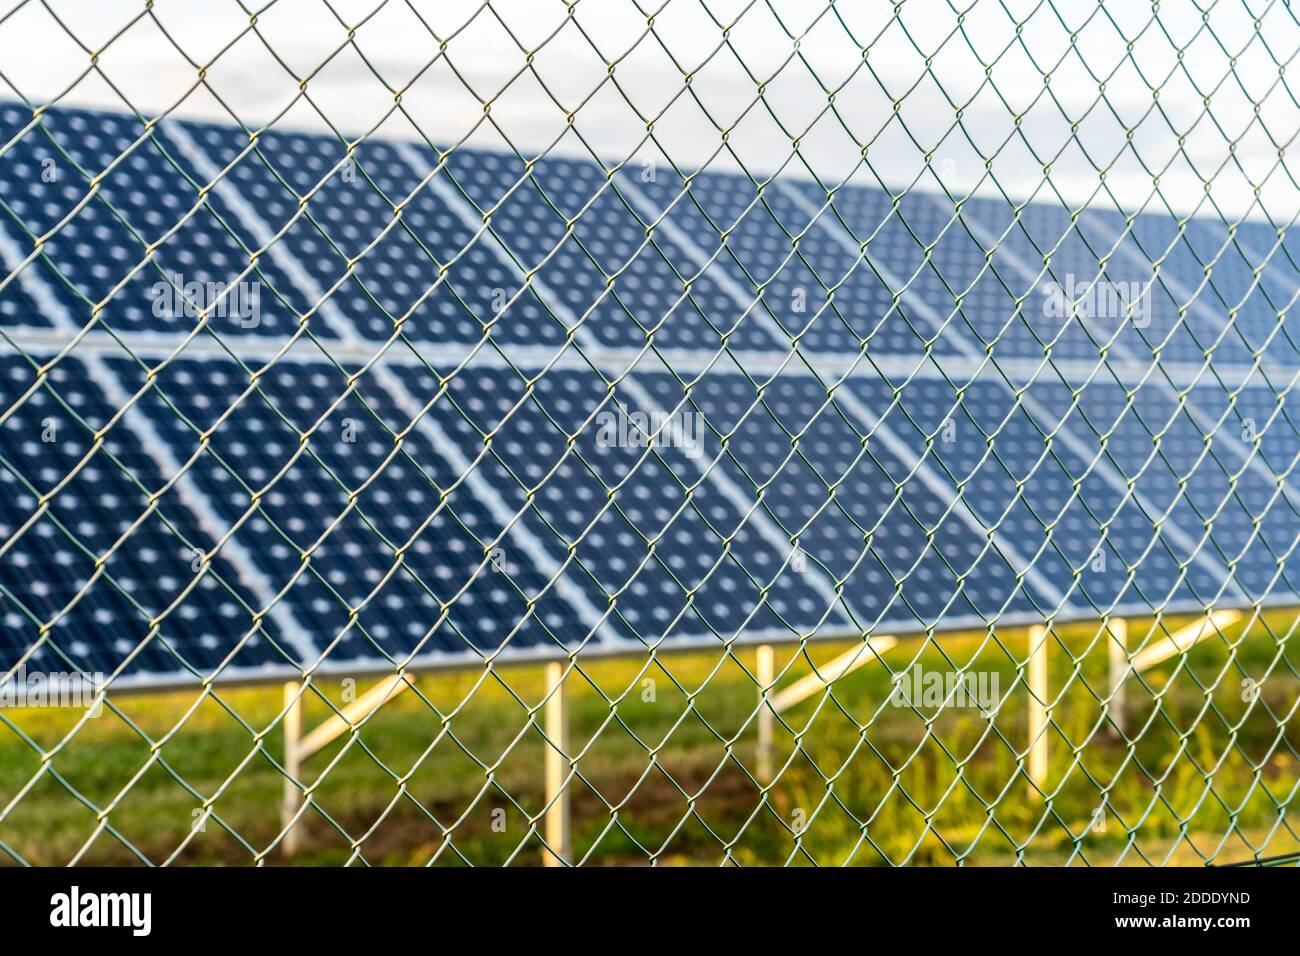 Solarpark mit Photovoltaikanlagen hinter dem Zaun, alternative Stromquelle Stockfoto